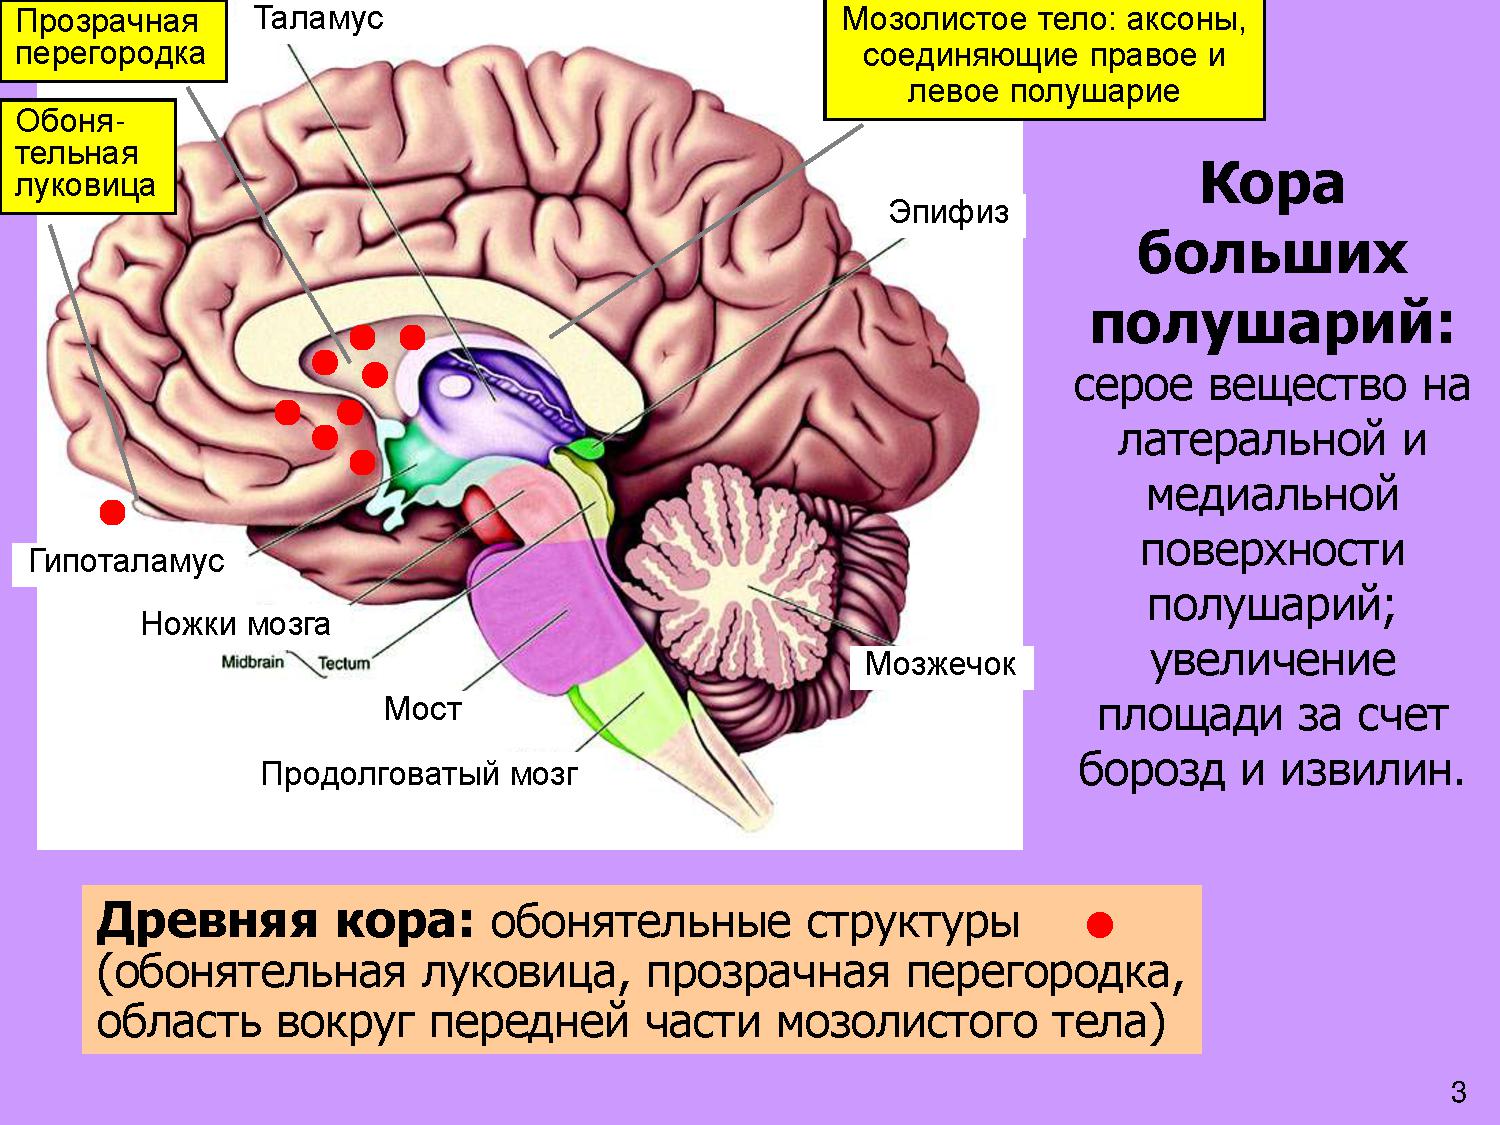 Гемисферы мозжечка изменение. Мозолистое тело конечного мозга функции. Прозрачная перегородка мозга анатомия. Строение мозолистого тела головного мозга. Таламус, гипоталамус, мост, мозжечок, продолговатый мозг..